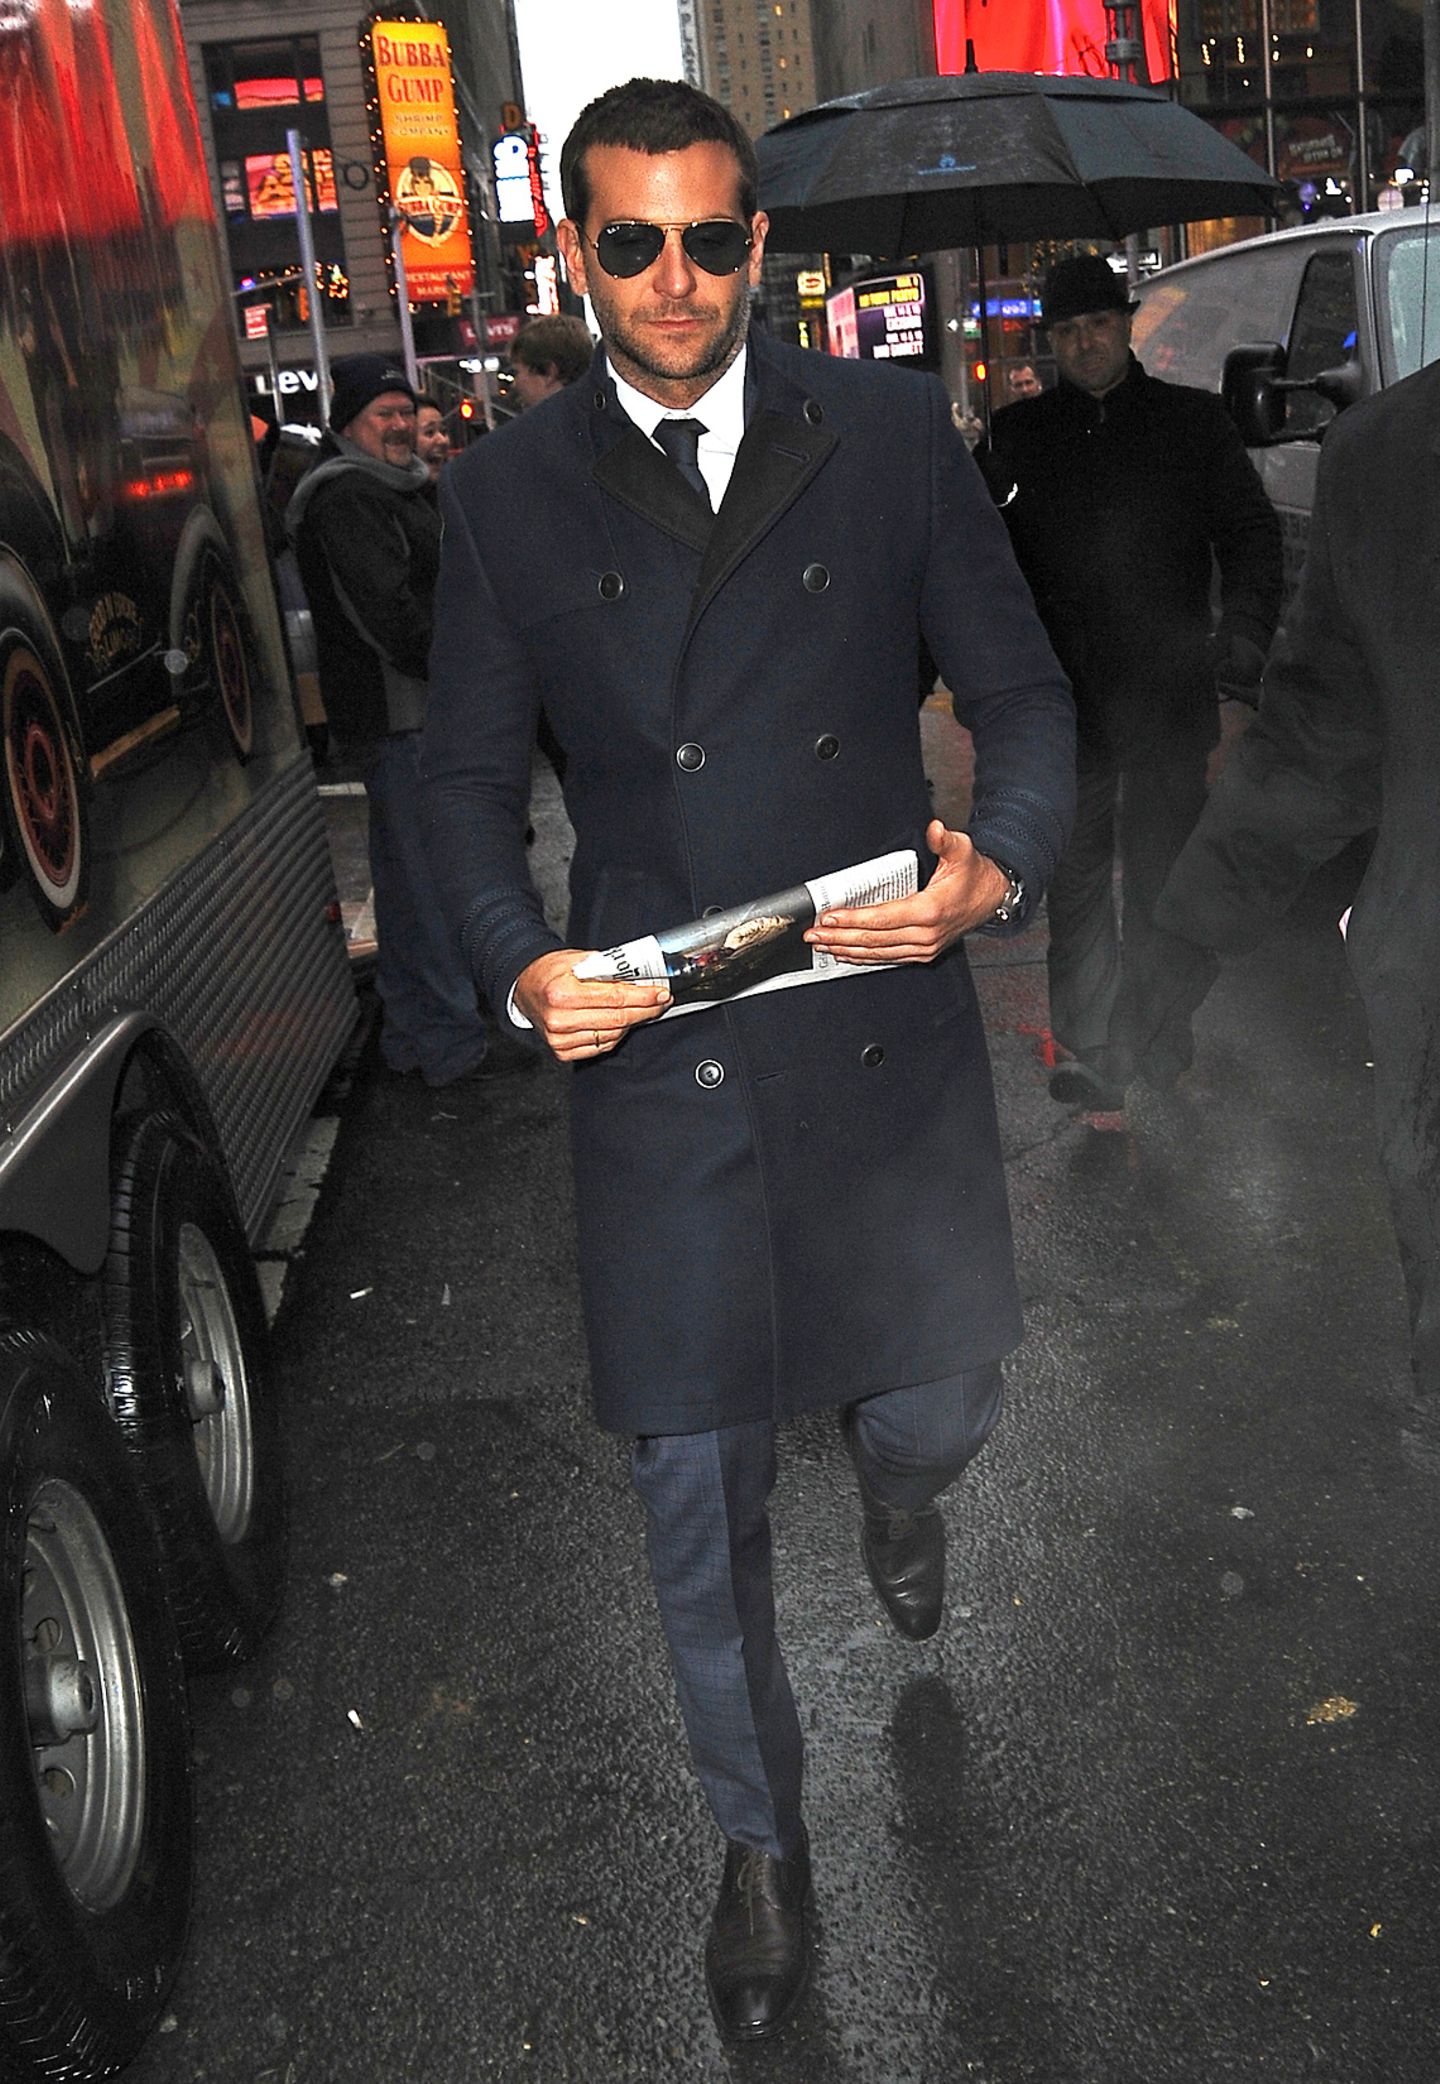 Ein Bild, wie aus einem Film: Dampfende Straßen im New Yorker Winter und entgegen kommt dir ein schöner Kerl mit perfekt sitzendem, blauen Mantel, enggeschnittener Hose und der klassischen Ray-Ban-Pilotenbrille. Schicker geht's kaum, Mr. Bradley Cooper.